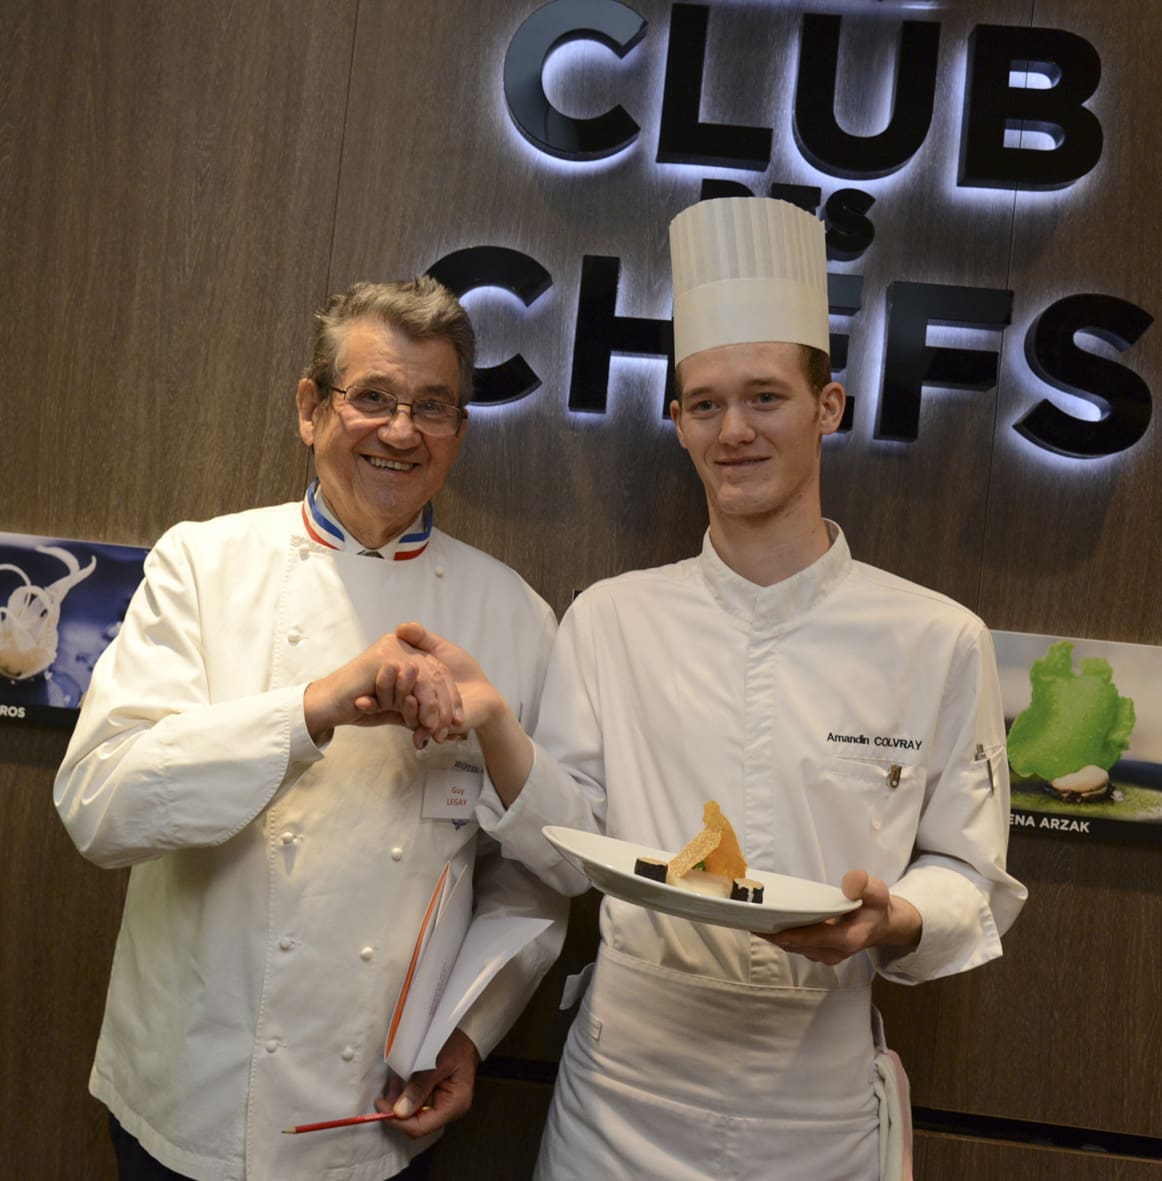 Amandin Colvray accompagné du célèbre Chef Meilleur Ouvrier de France Guy Legay, ex-Chef du Ritz